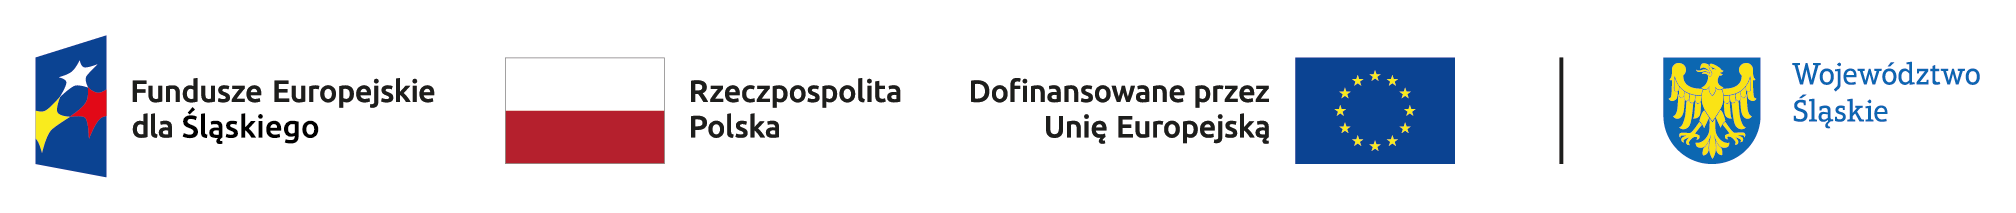 Logotypy informujące o współfinansowaniu projektu z funduszy unijnych